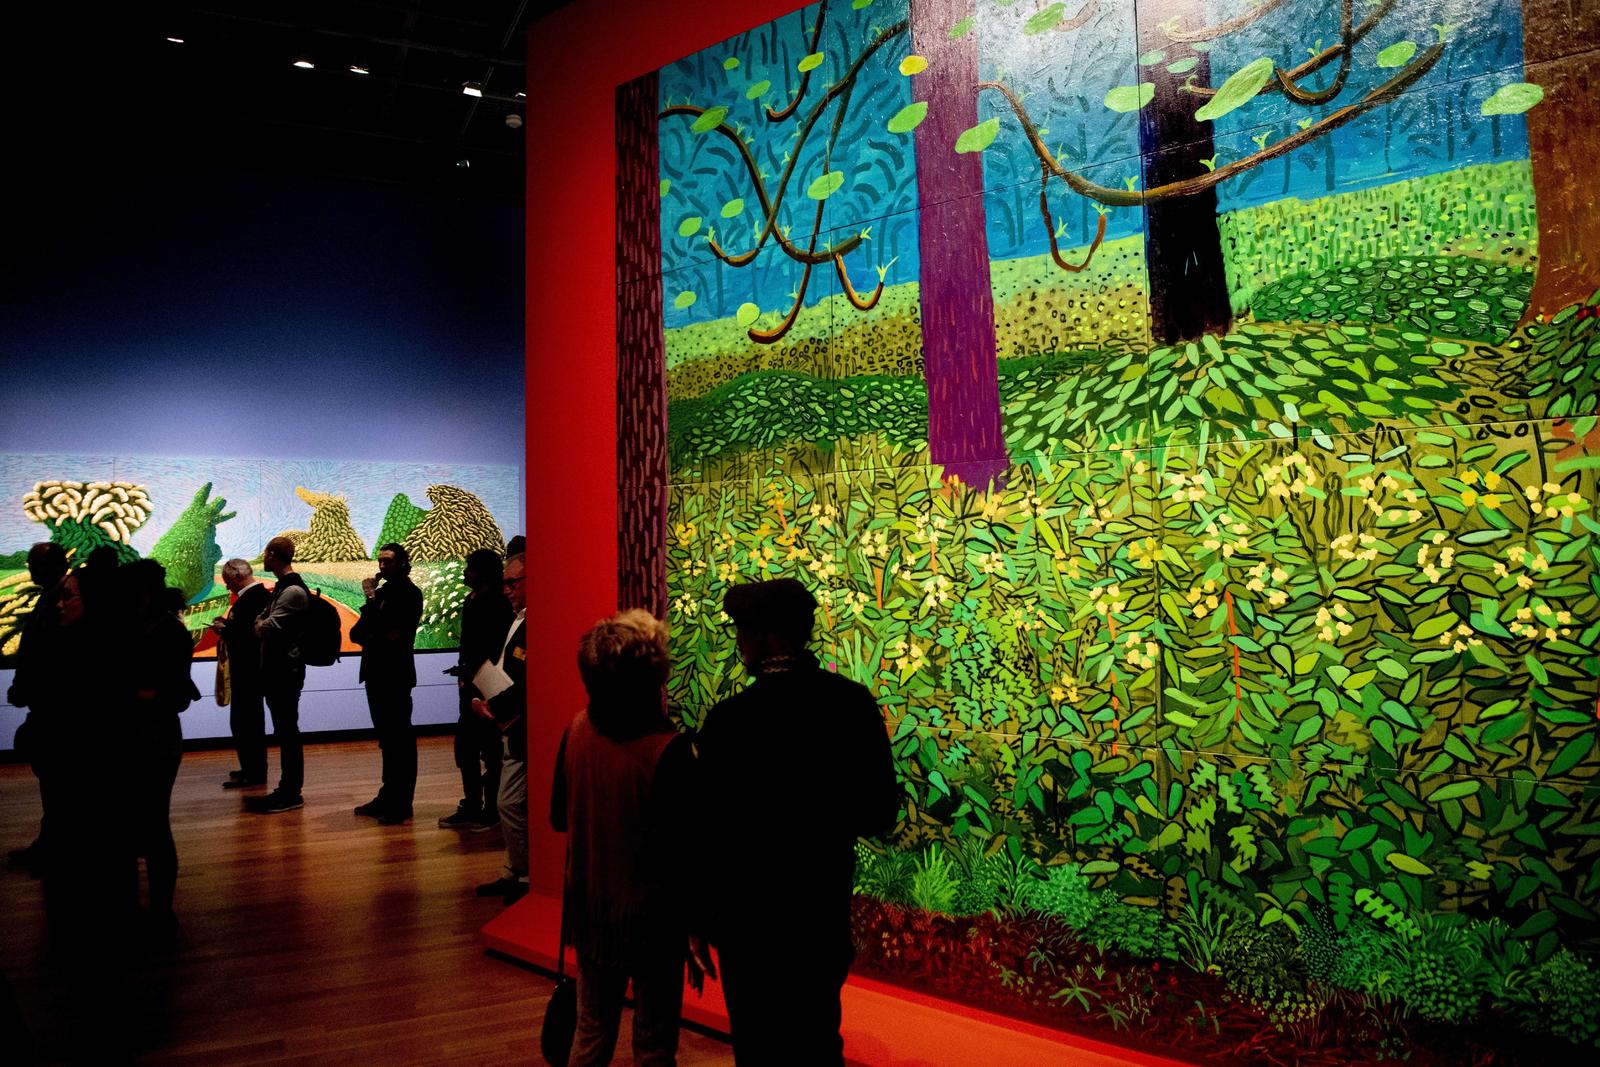 Color. El artista David Hockney se inspira en paisajes y en la naturaleza para crear su obra que está envuelta de brillantes combinaciones de colores y formas.